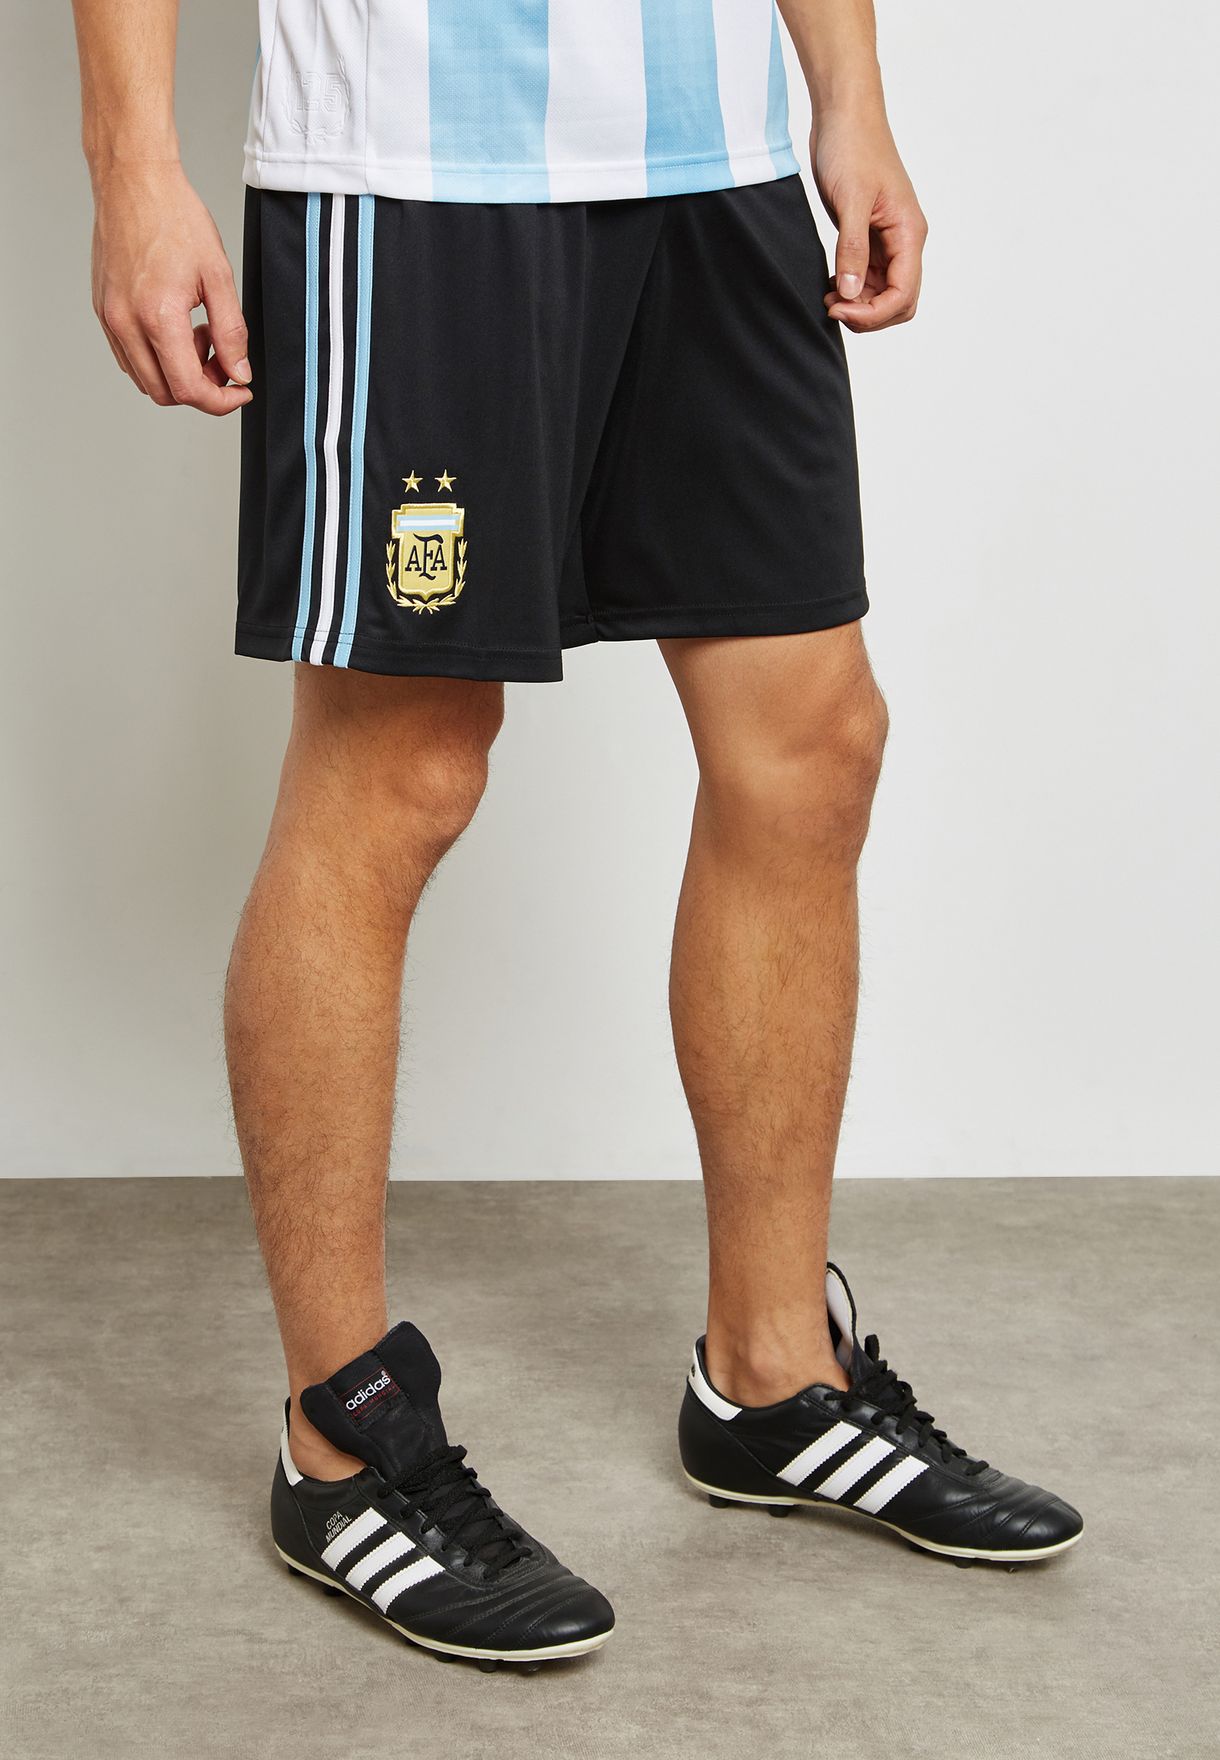 argentina adidas shorts